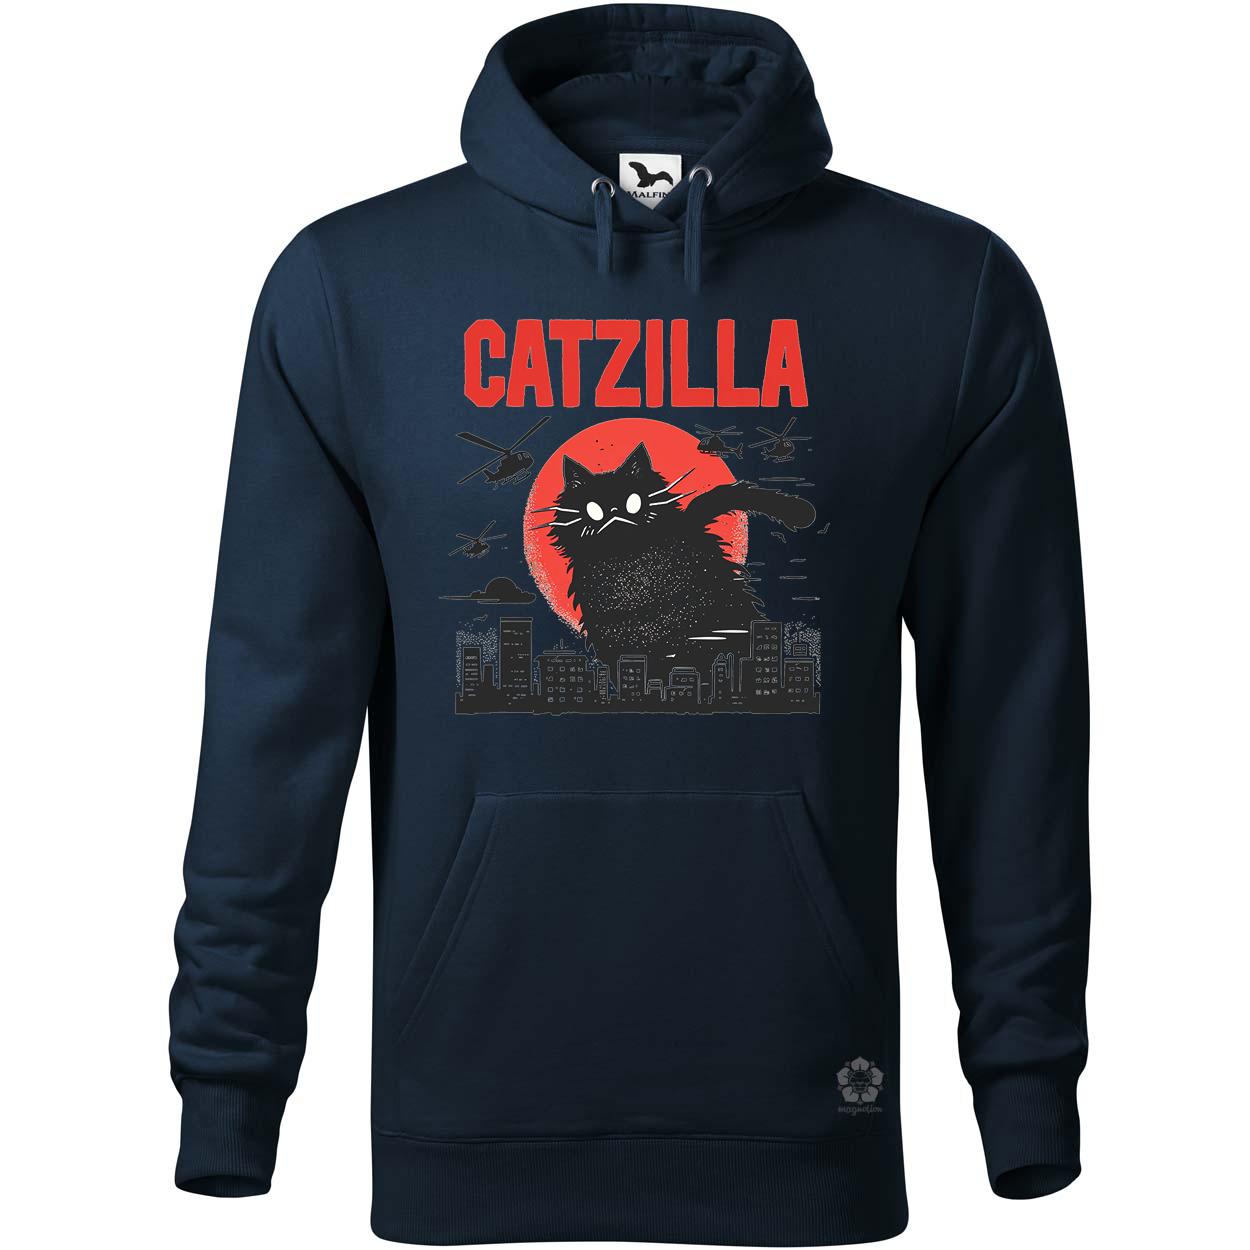 Catzilla v9